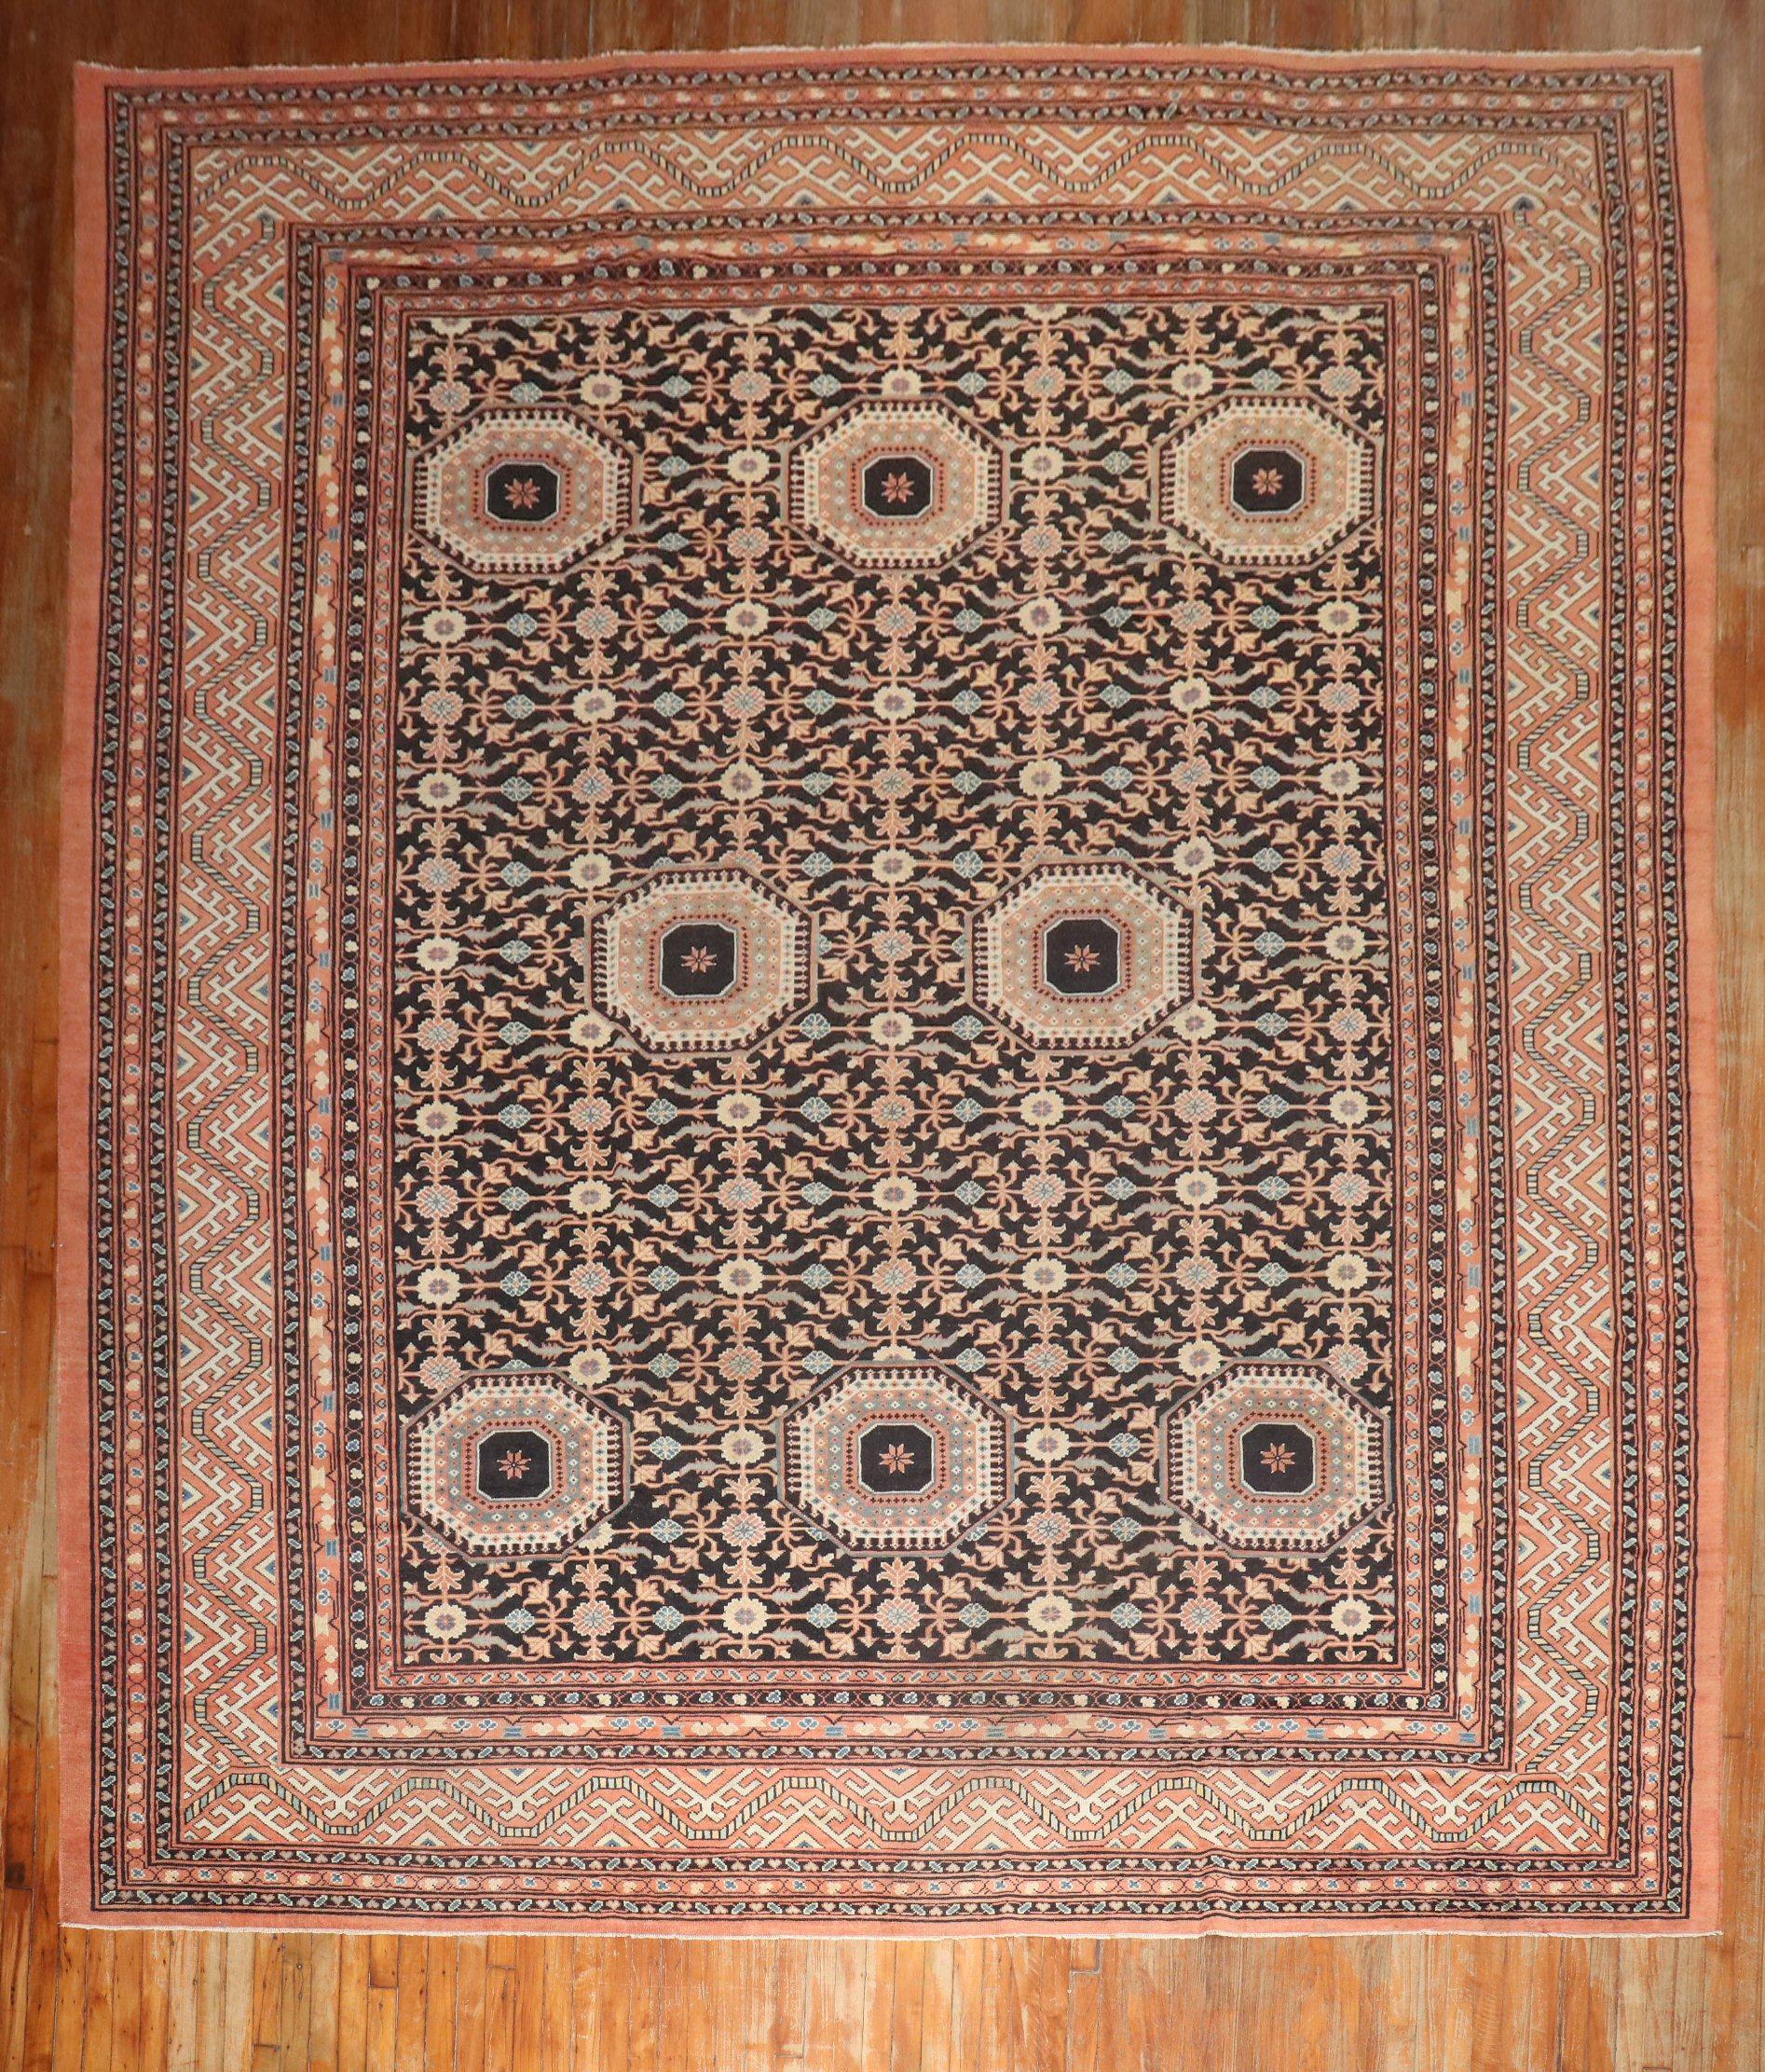 3. Quartal des 20. Jahrhunderts großes Zimmerformat Samarkand Ost-Tiurkestan-Teppich

Teppich nein.	j3320
Größe	11' x 14' 7